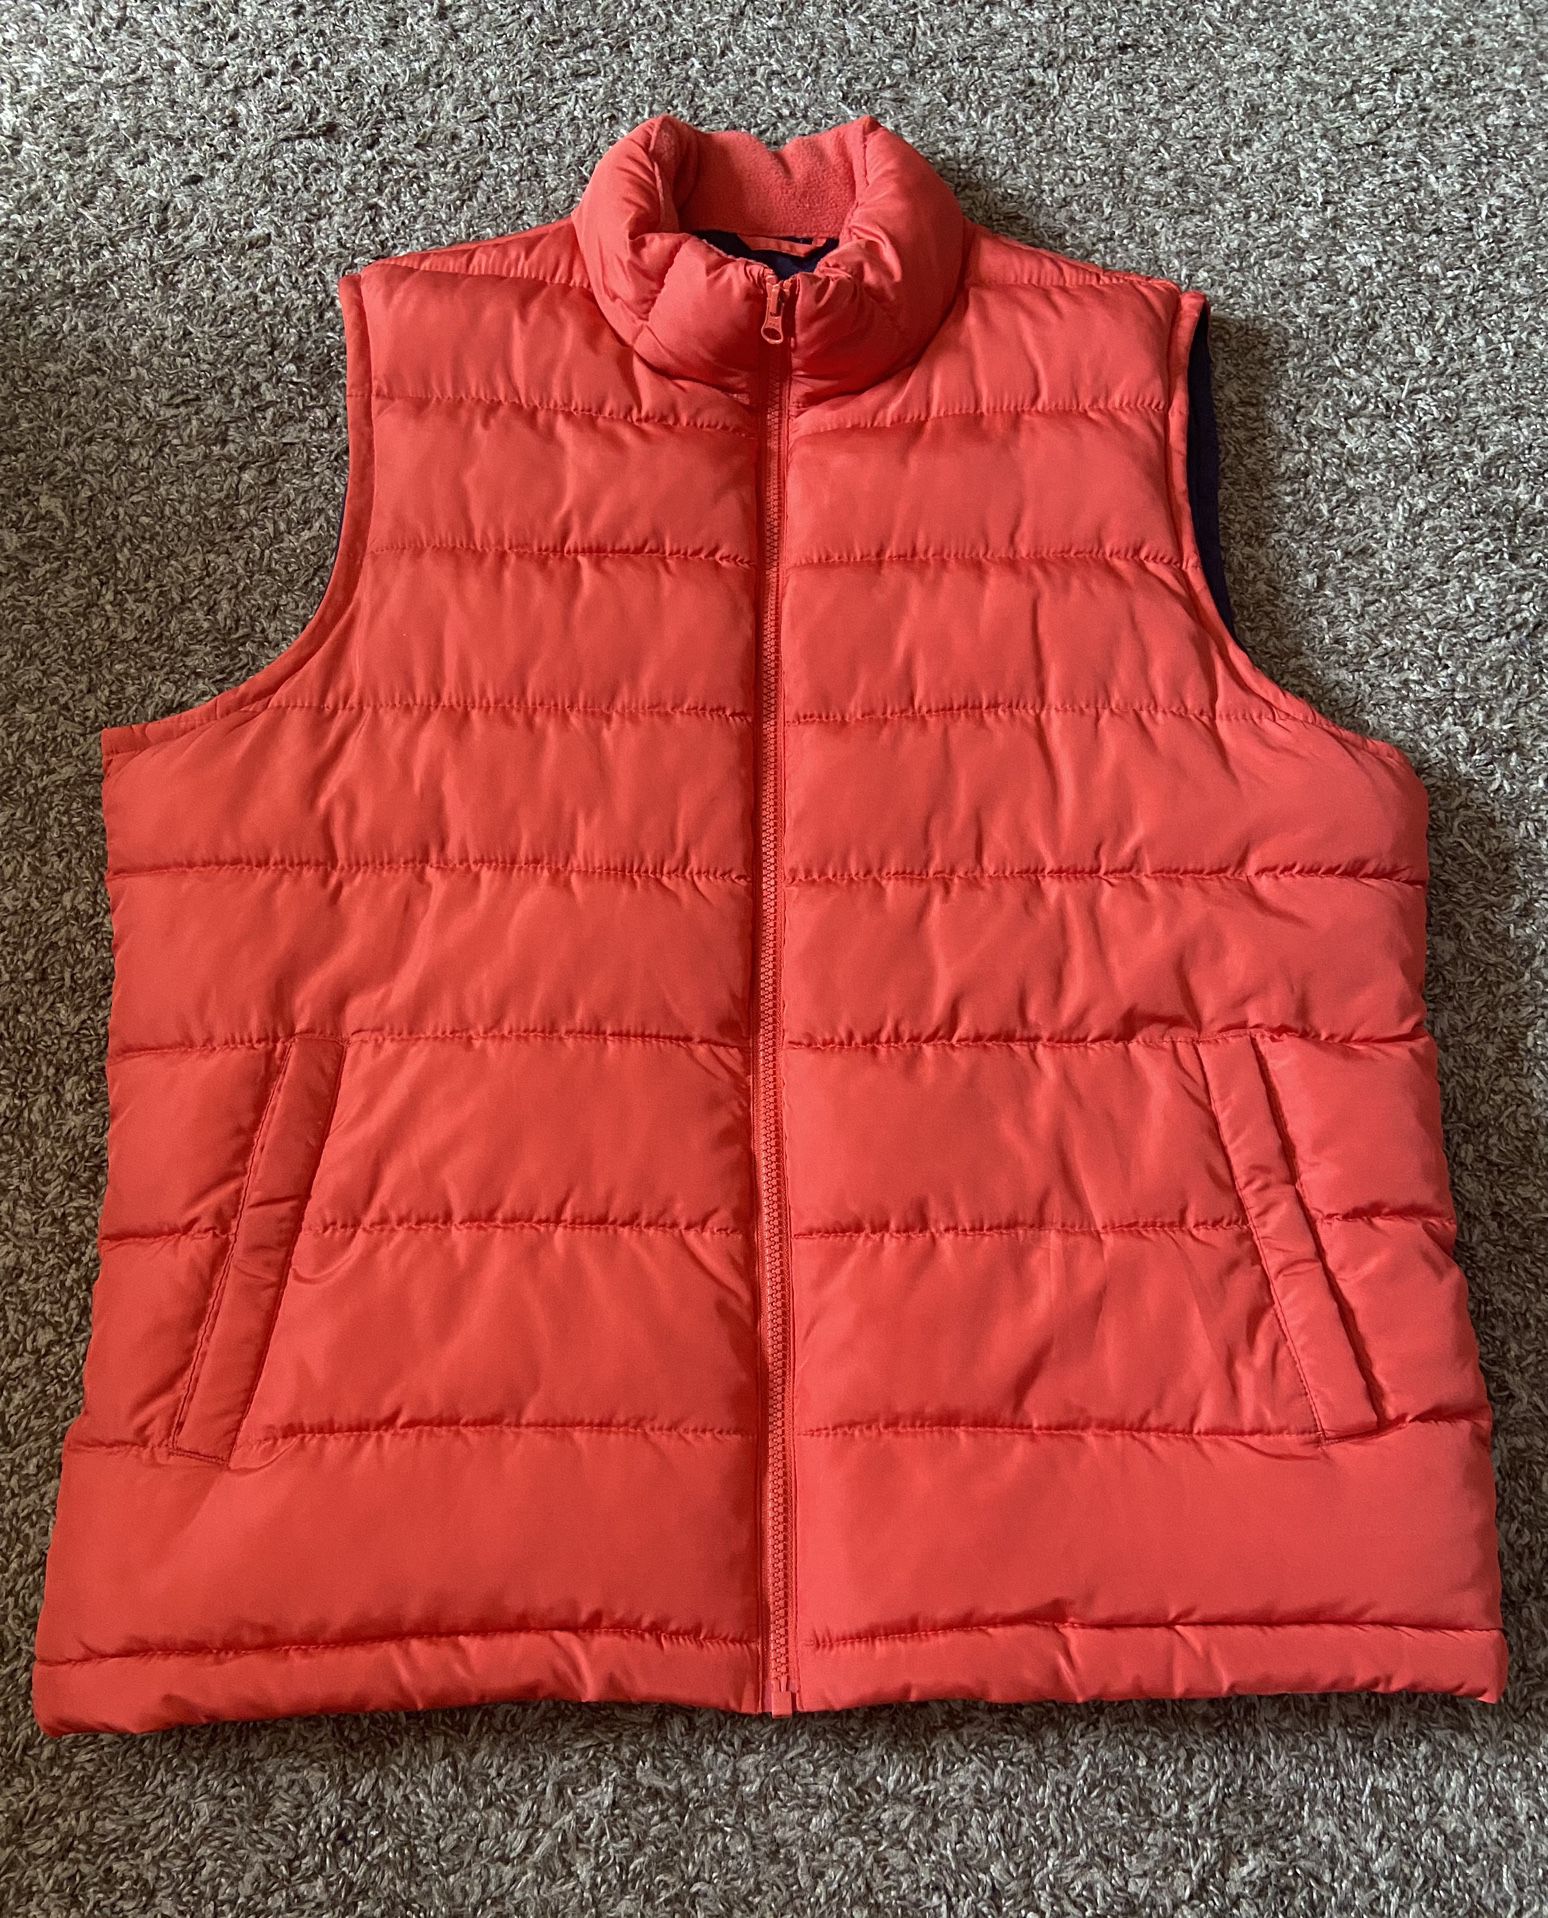 Gap / Orange Puffer Vest